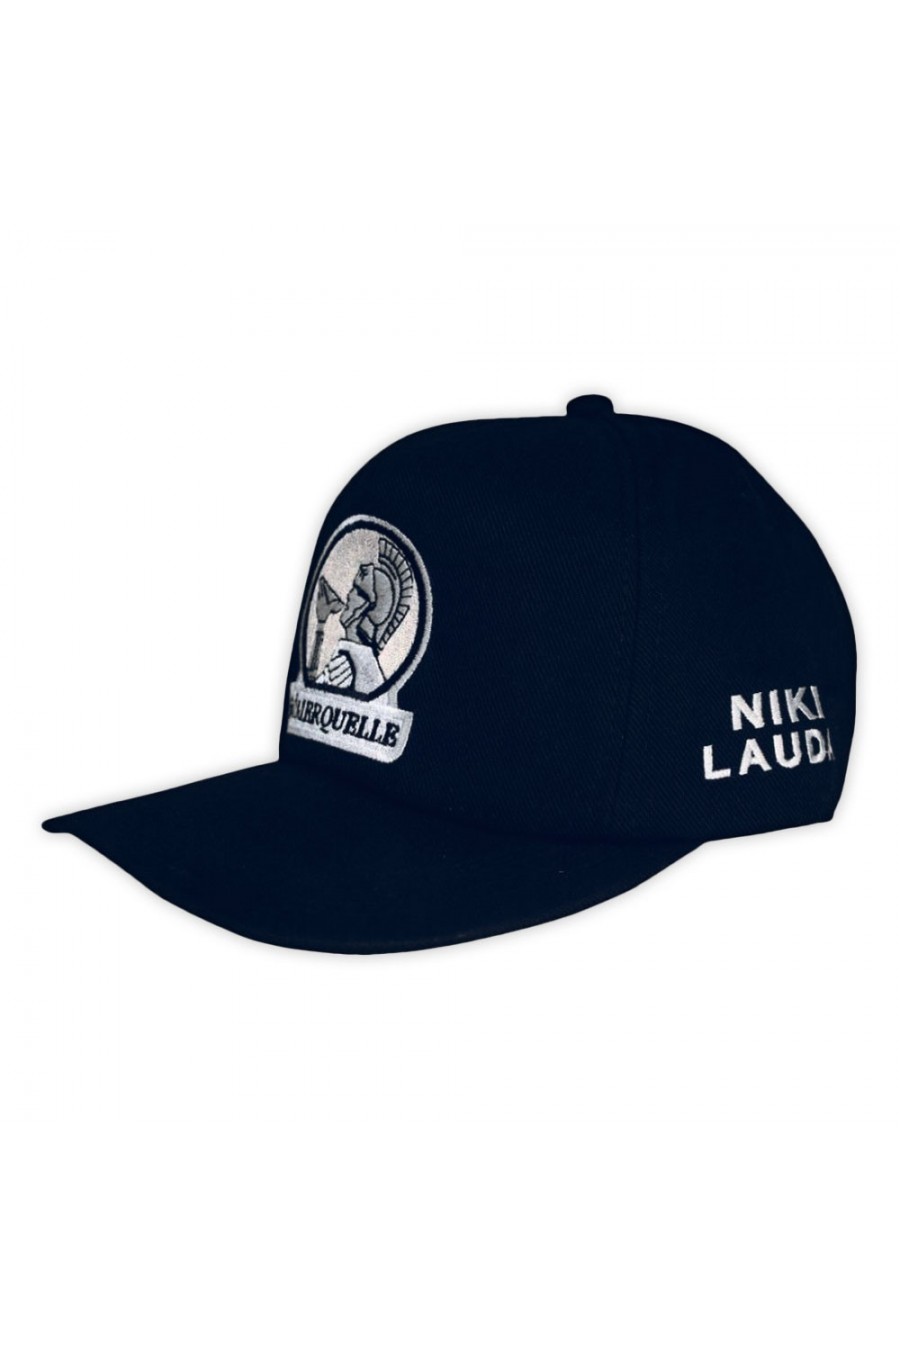 Niki Lauda F1 Römerquelle Cap